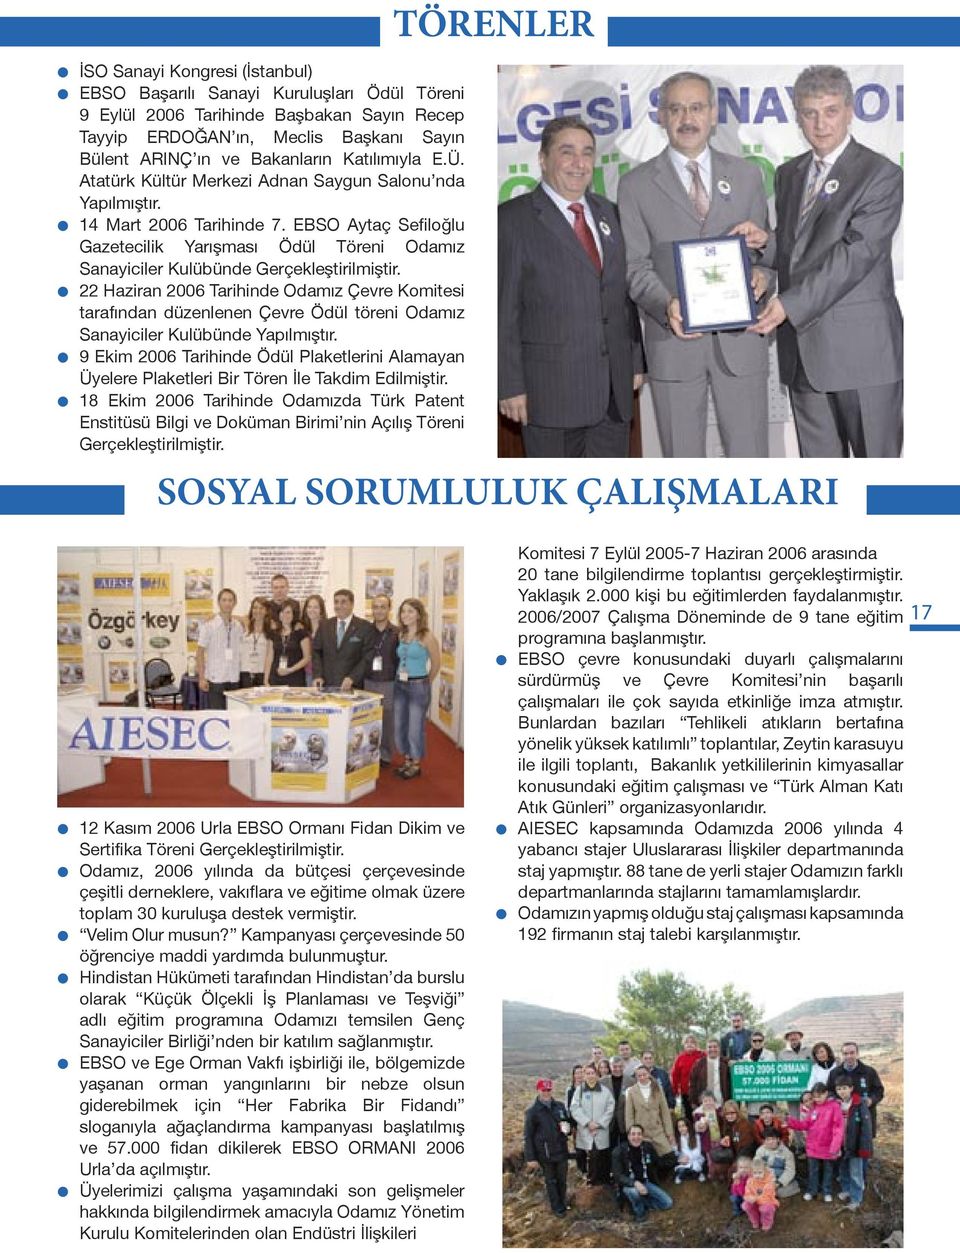 EBSO Aytaç Sefiloğlu Gazetecilik Yarışması Ödül Töreni Odamız Sanayiciler Kulübünde Gerçekleştirilmiştir.